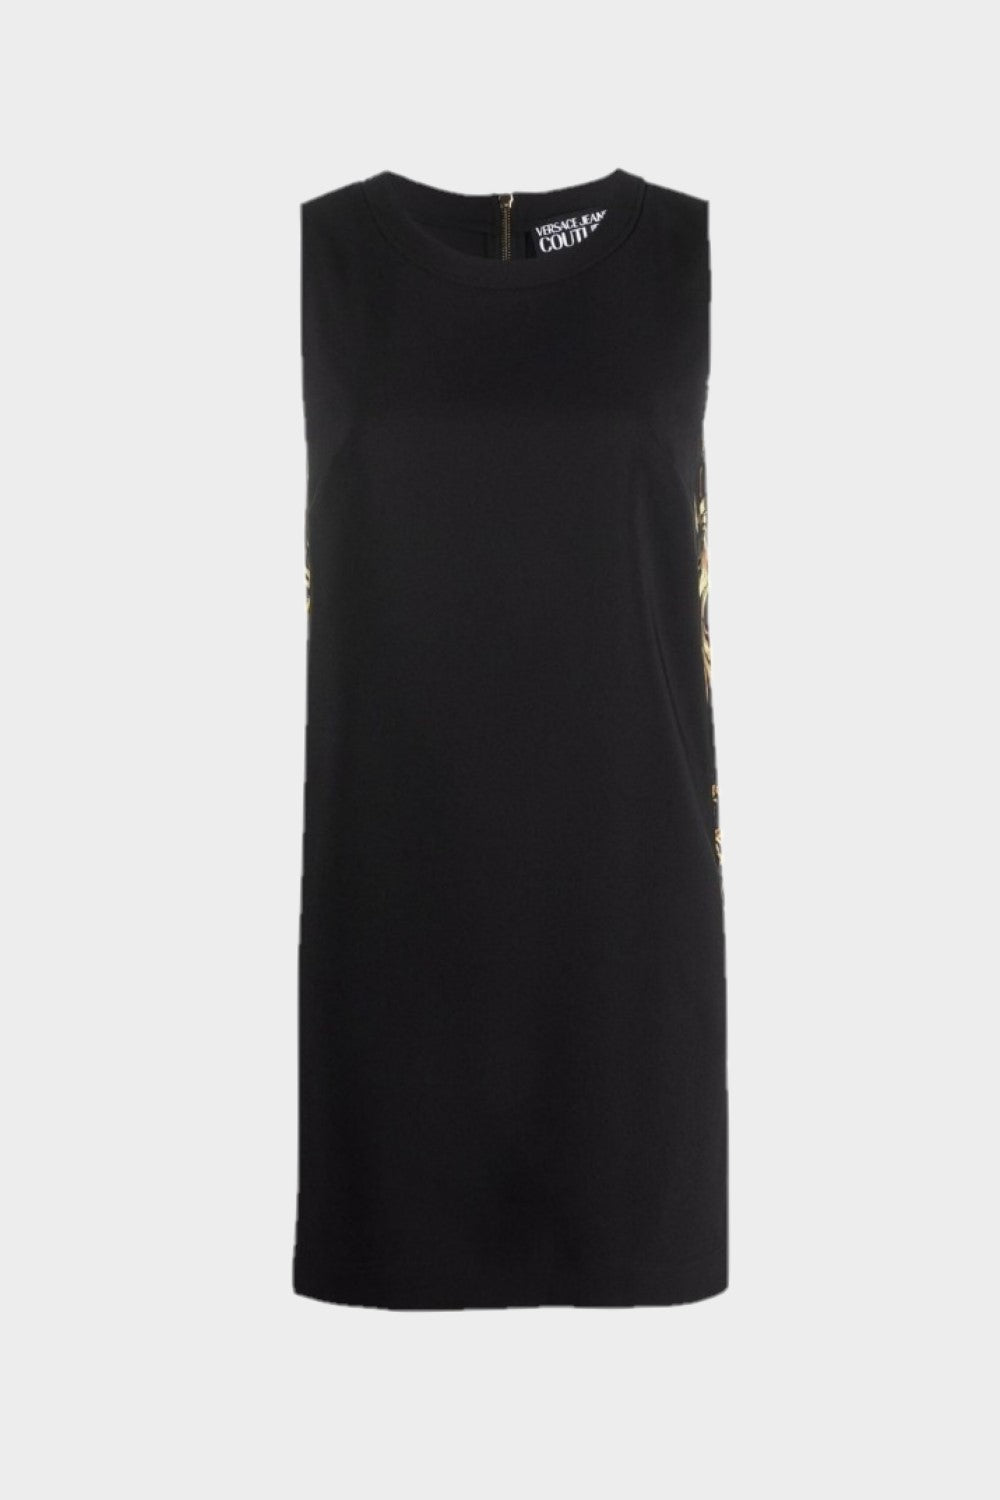 שמלה קצרה לנשים בארוק VERSACE Vendome online | ונדום .